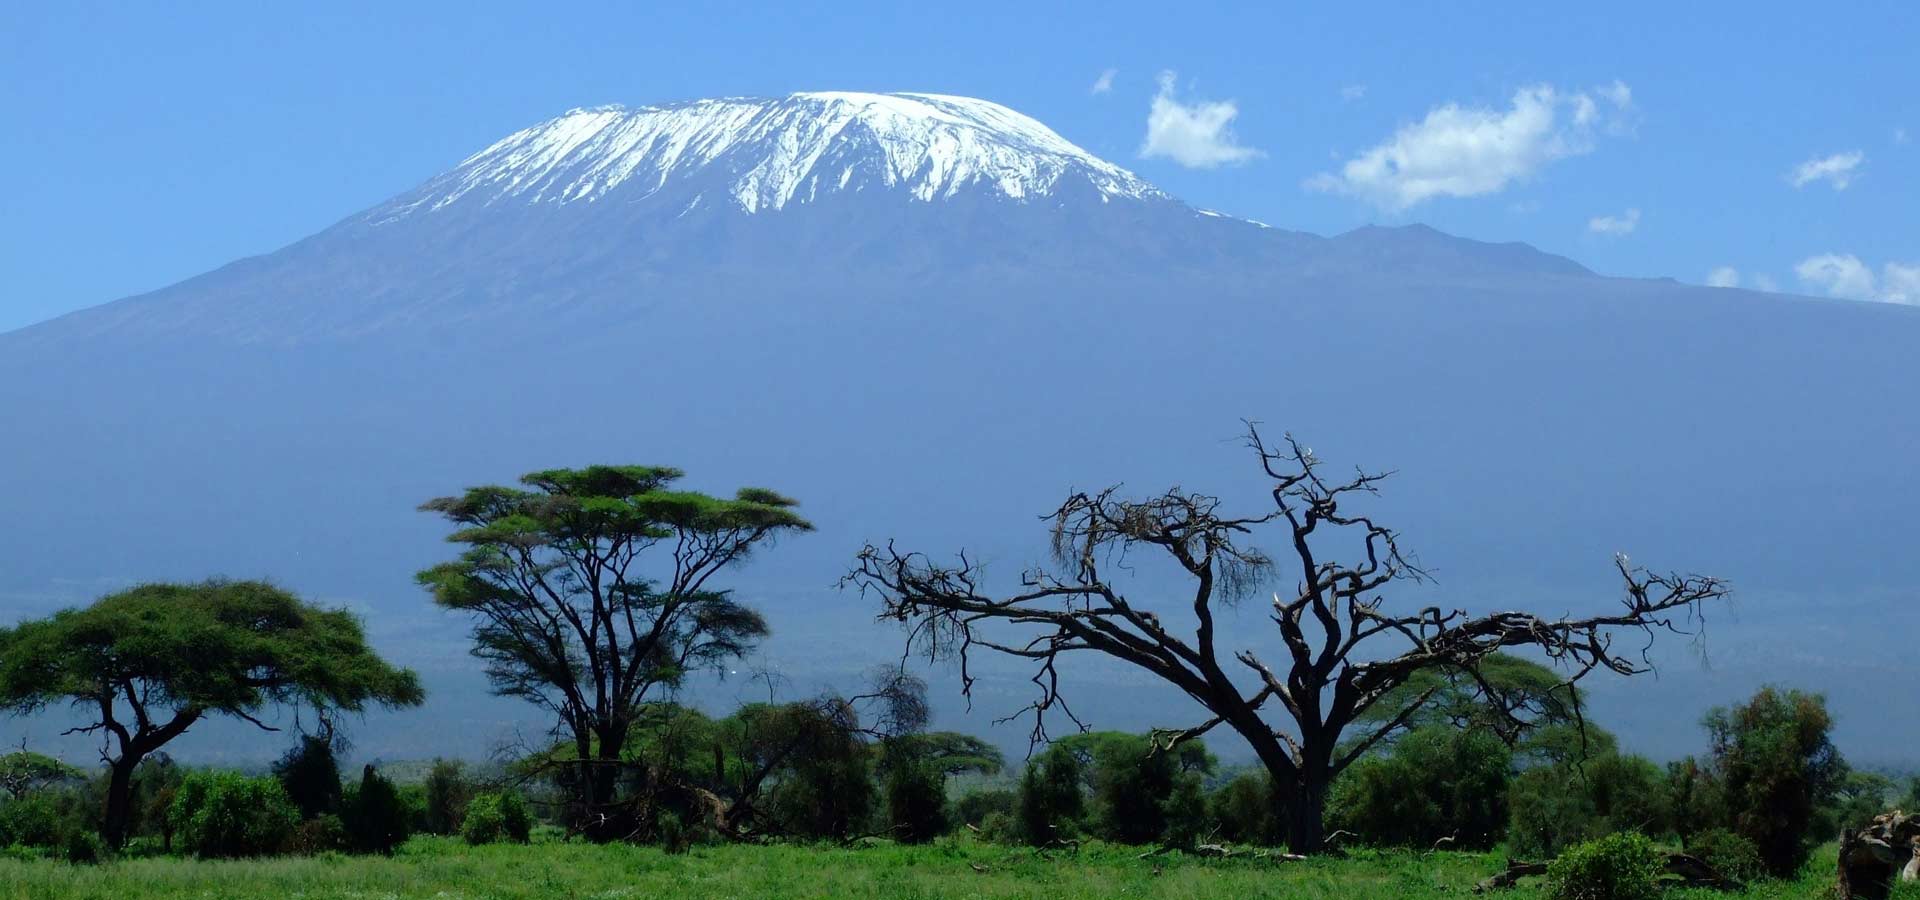 Kilimanjaro On The Mountain